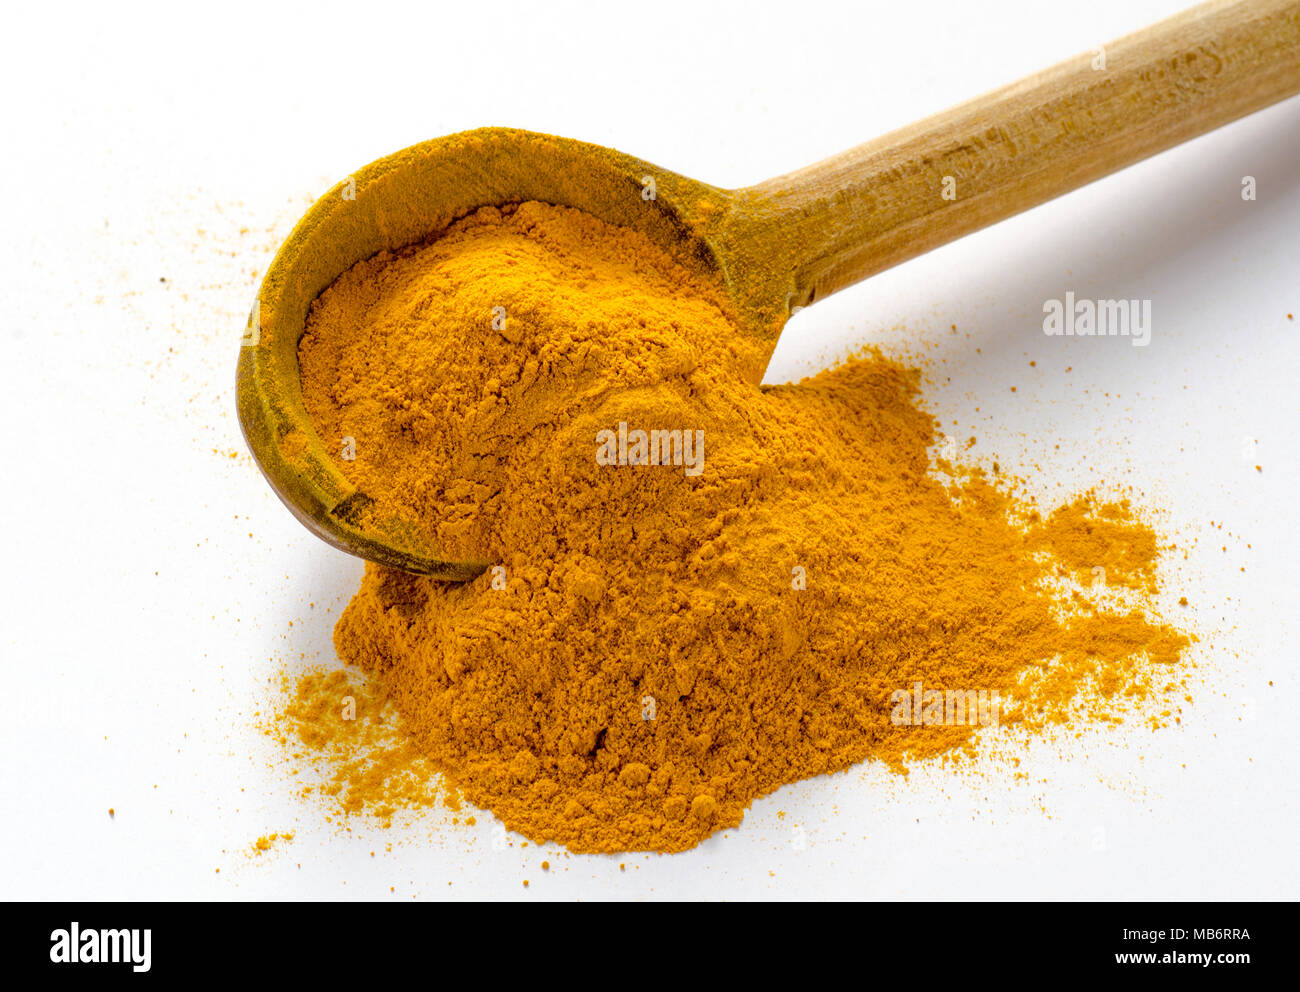 Kurkuma Pulver. Gelbwurz oder Kurkuma ist das Gewürz, das Curry seine gelbe  Farbe. Es ist in Indien seit Tausenden von Jahren als Gewürz verwendet  worden sind, und Stockfotografie - Alamy